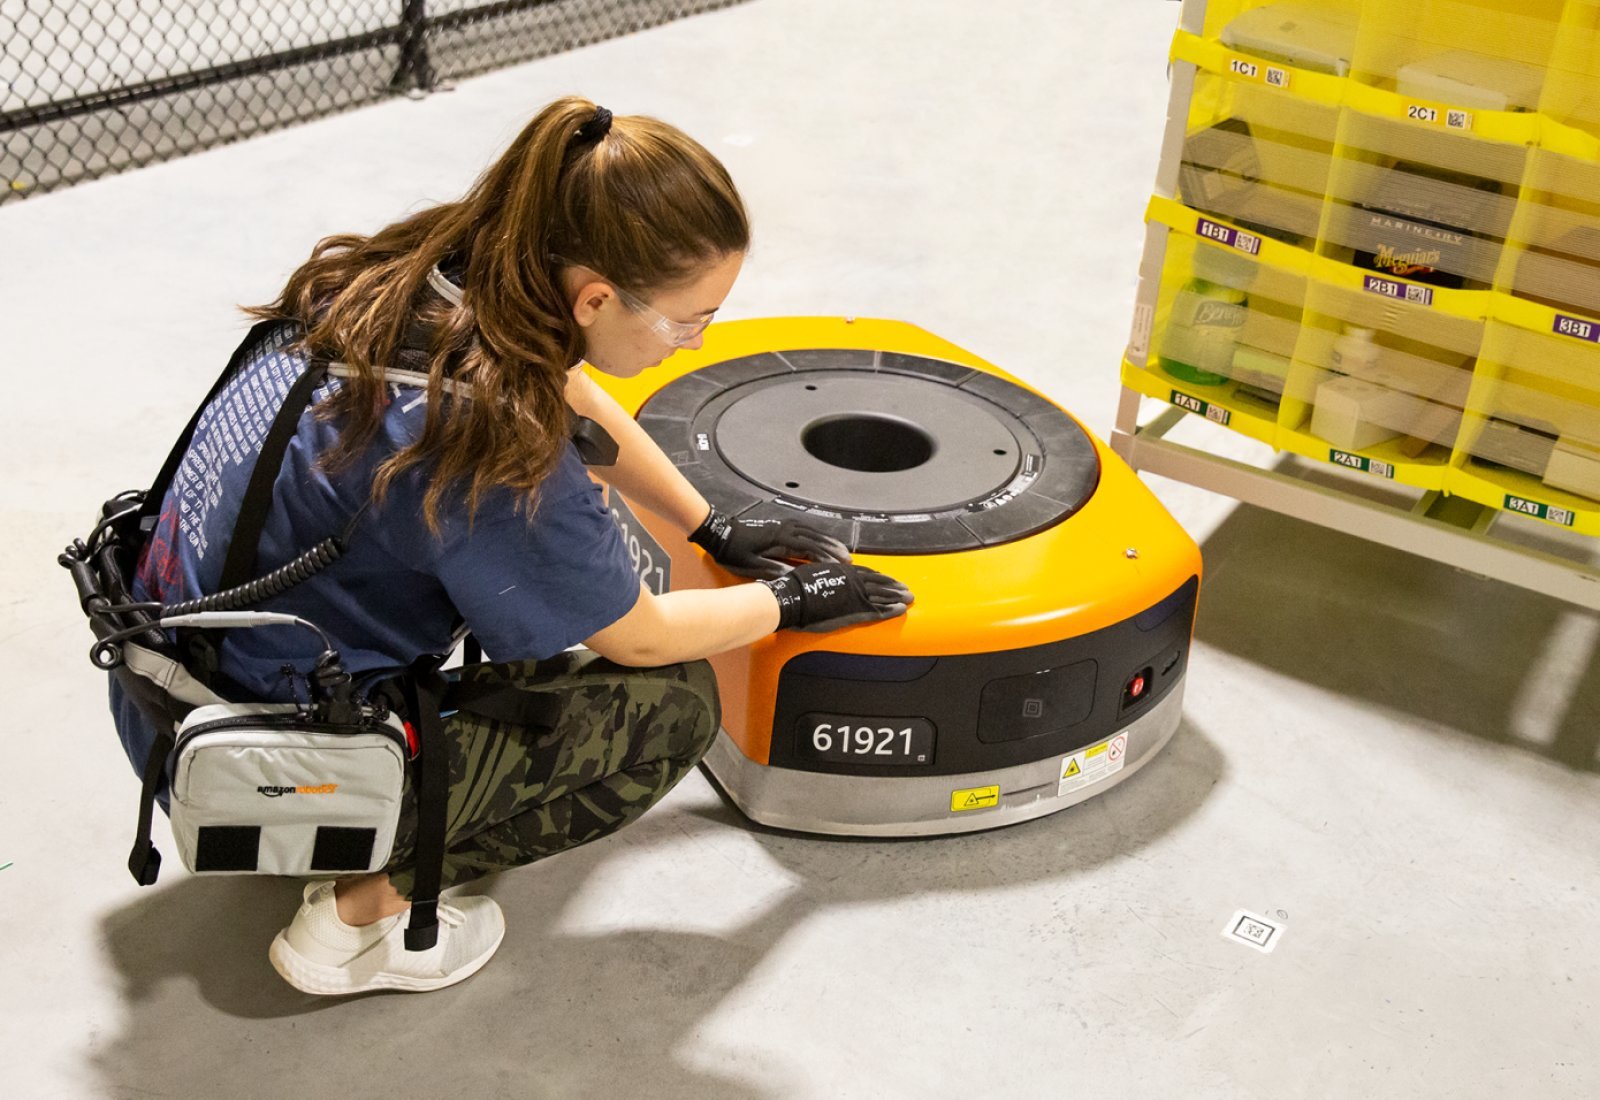  Amazon a conçu un gilet pour protéger les travailleurs humains des robots